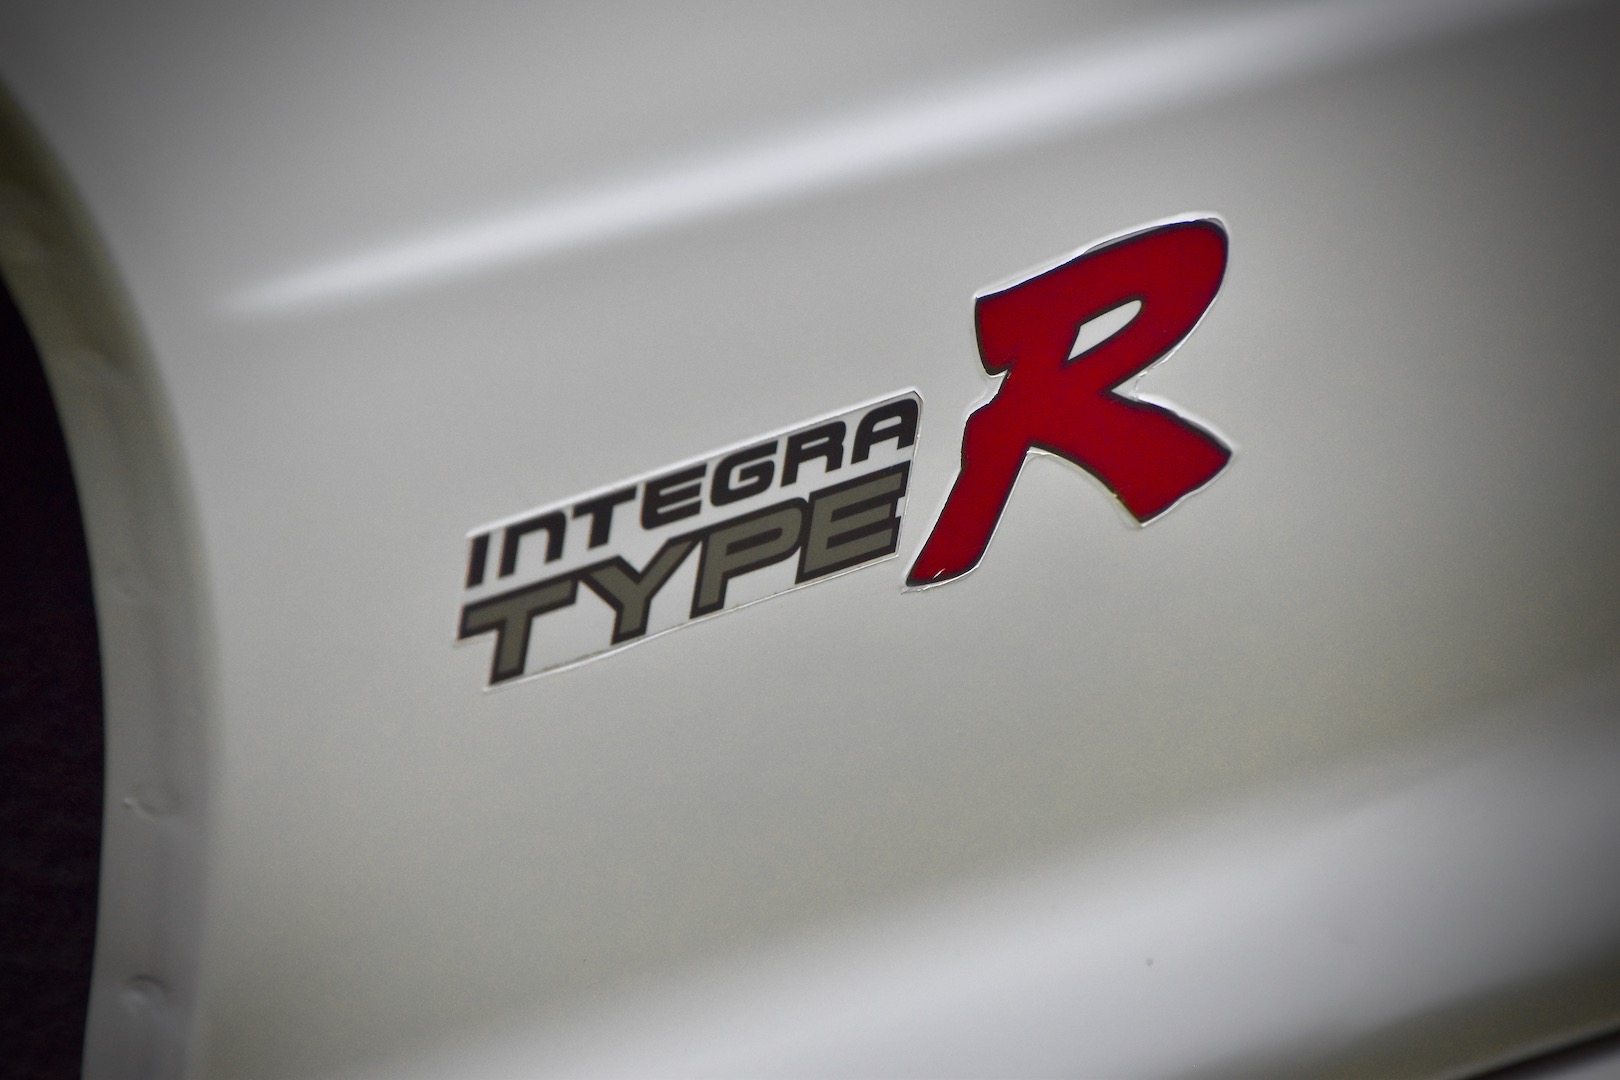 1996 Honda Integra Type R rear fender sticker